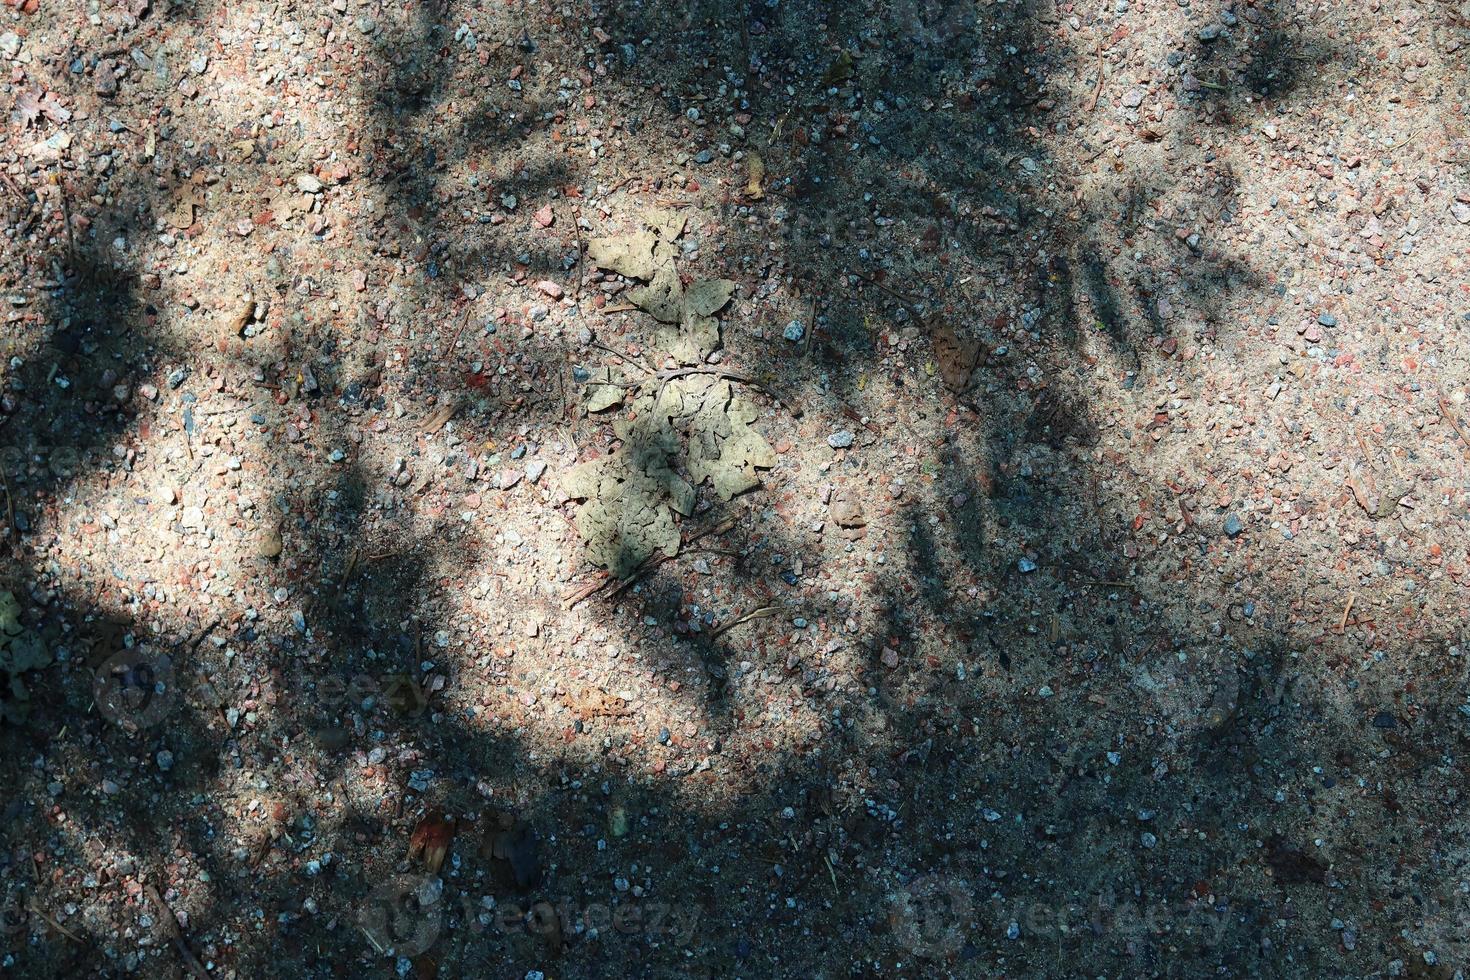 vista detallada de cerca en una textura de suelo forestal con musgo y ramas foto